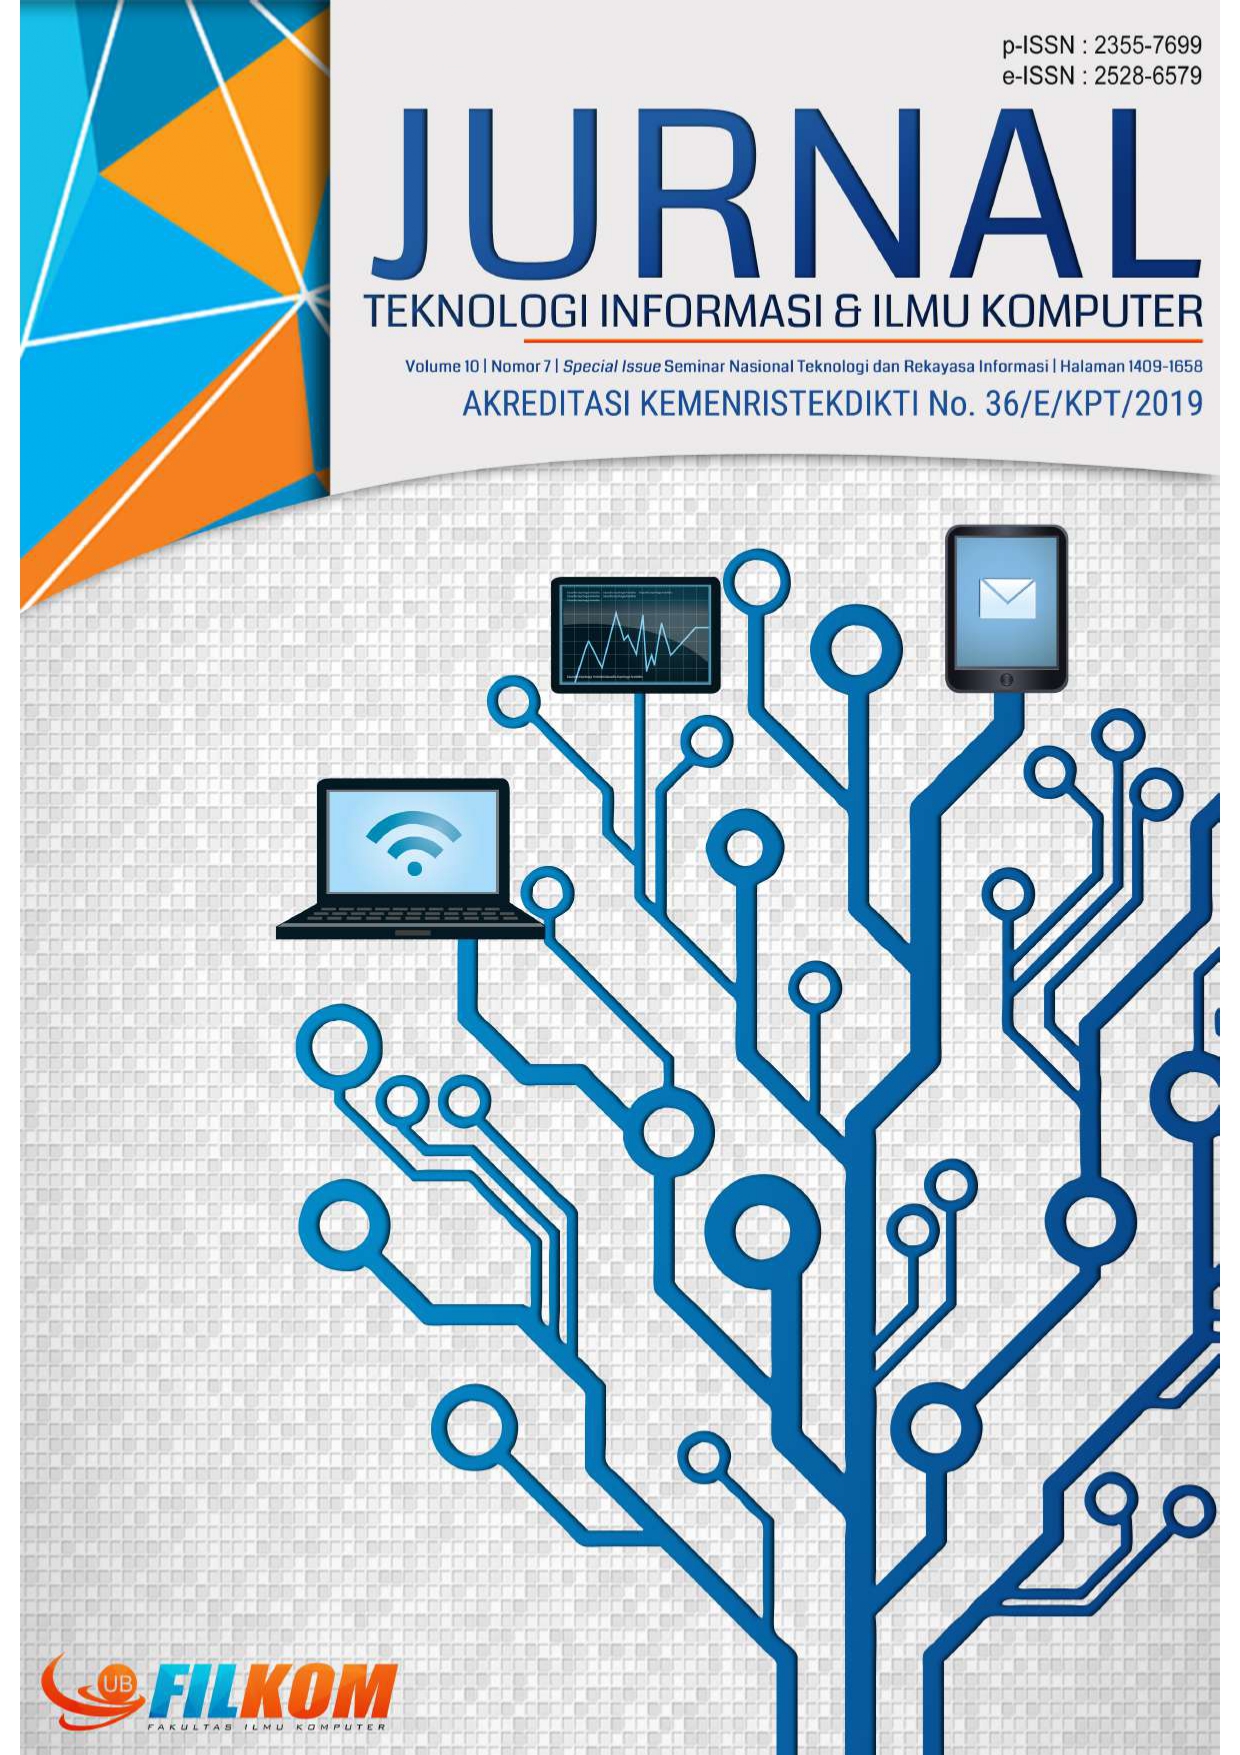 					Lihat Vol 10 No 7: Spesial Issue Seminar Nasional Teknologi dan Rekayasa Informasi (SENTRIN) 2023
				